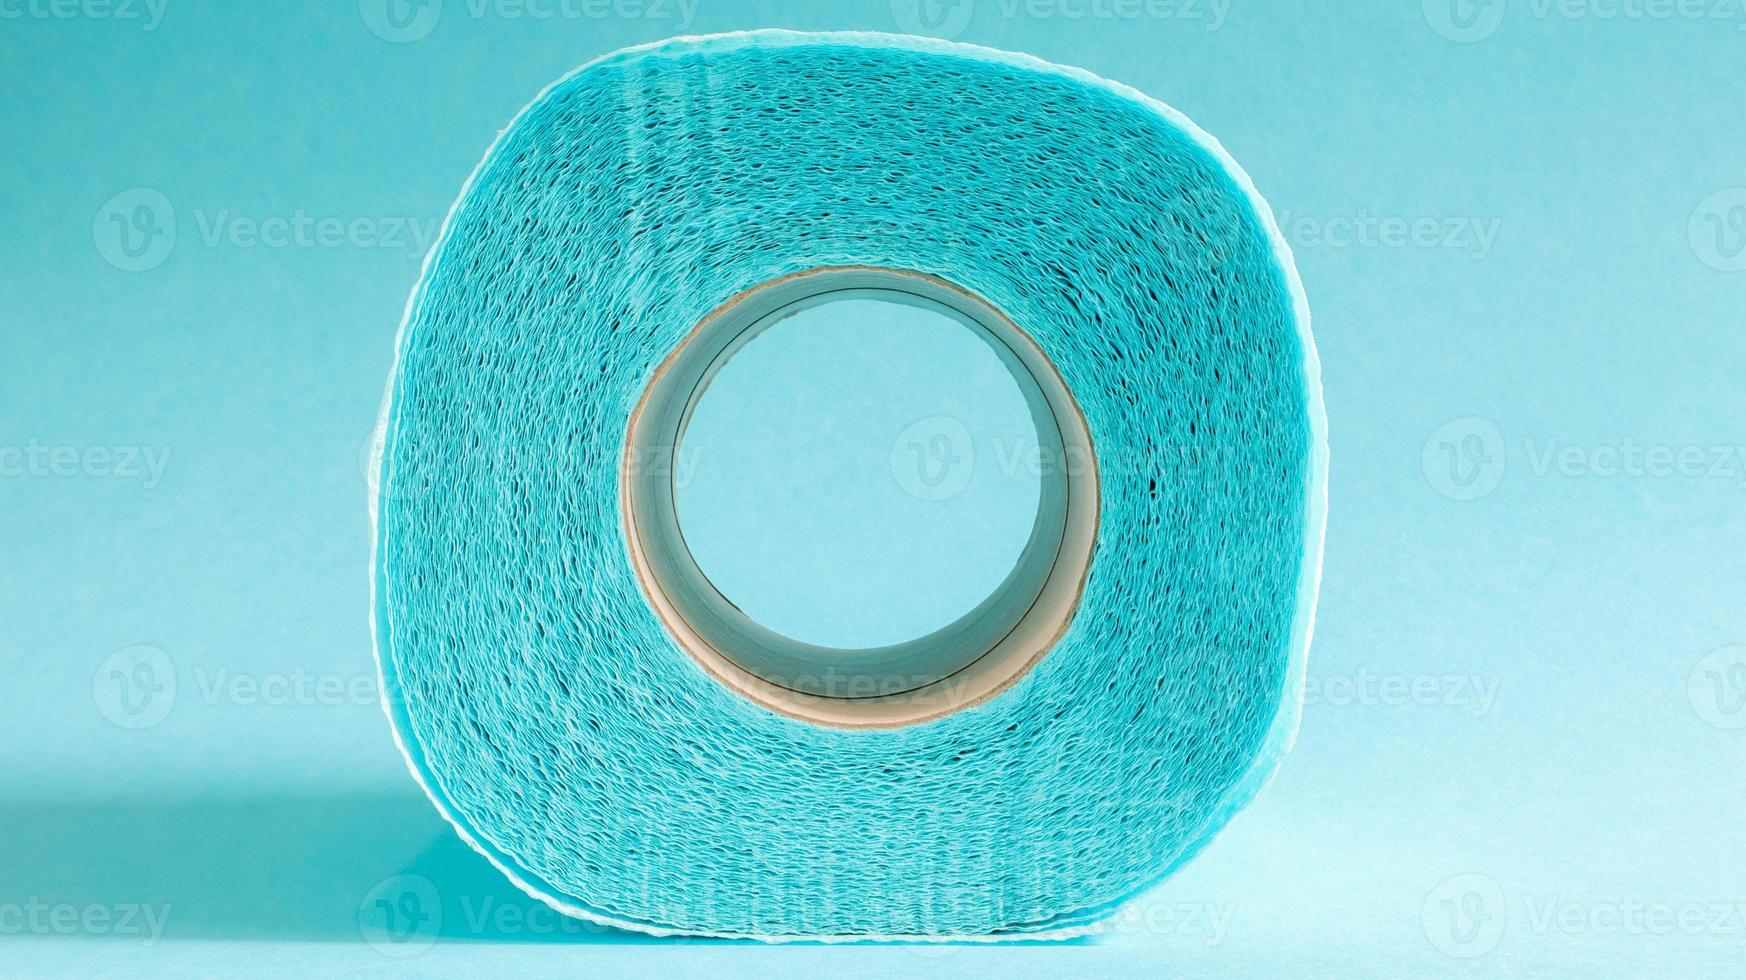 blå rulle av modernt toalettpapper på en blå bakgrund. en pappersprodukt på en kartonghylsa, använd för sanitära ändamål av cellulosa med utskärningar för enkel rivning. präglad ritning foto